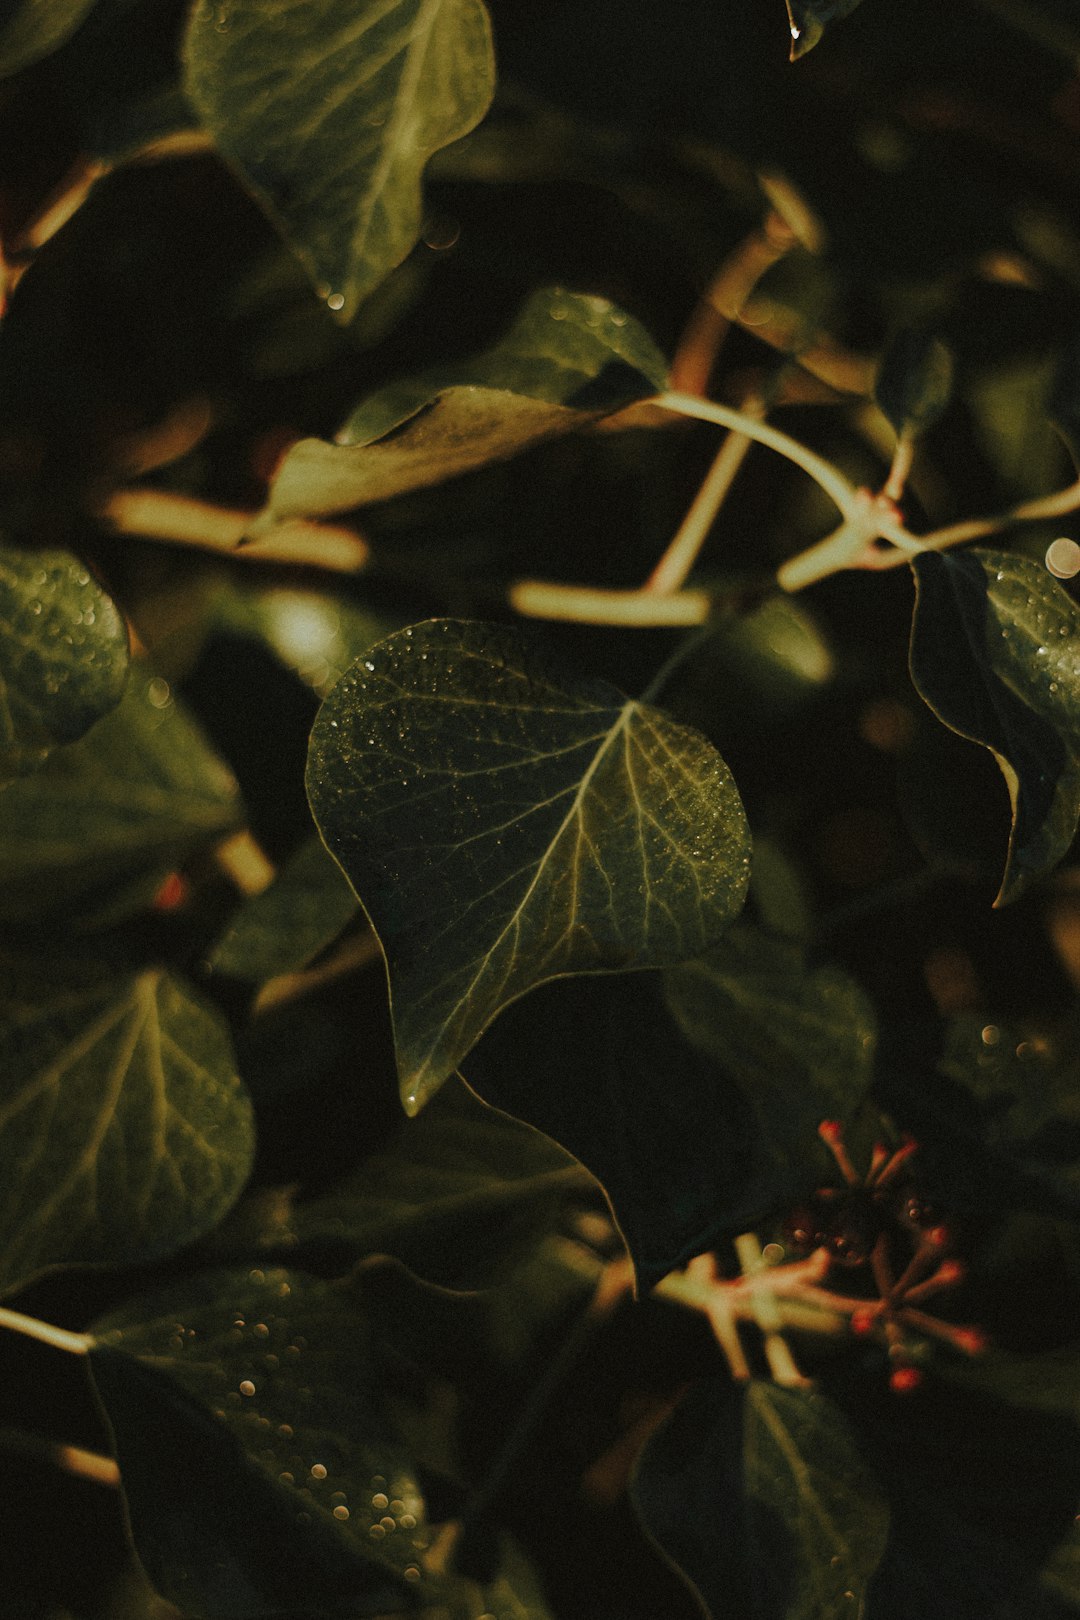 green leaves in tilt shift lens